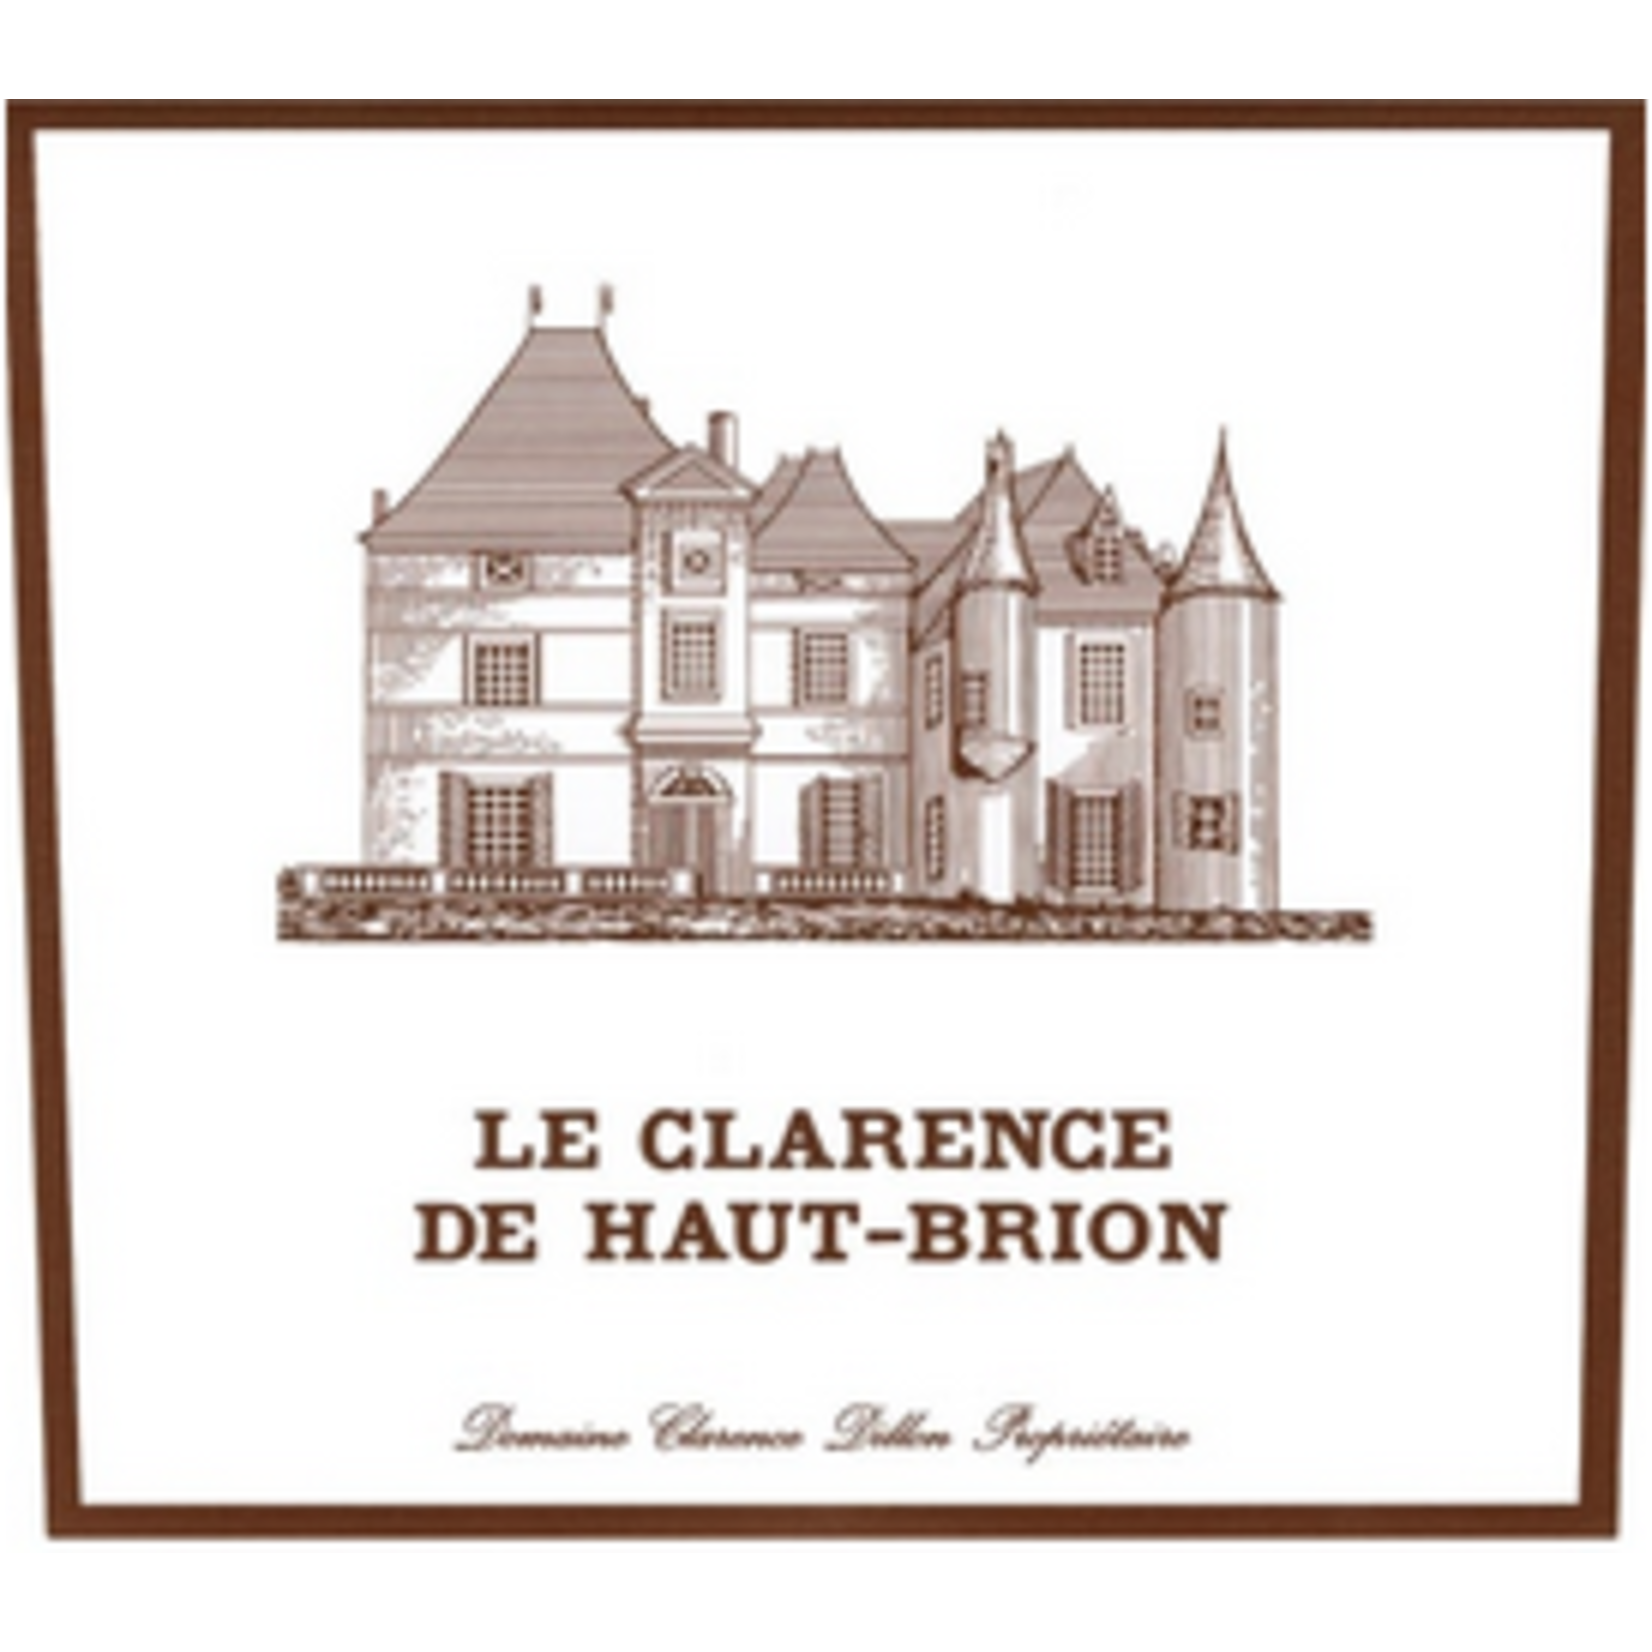 Domaine Clarence Dillon Château Haut-Brion Le Clarence de Haut-Brion 2015  Pessac-Leognan France